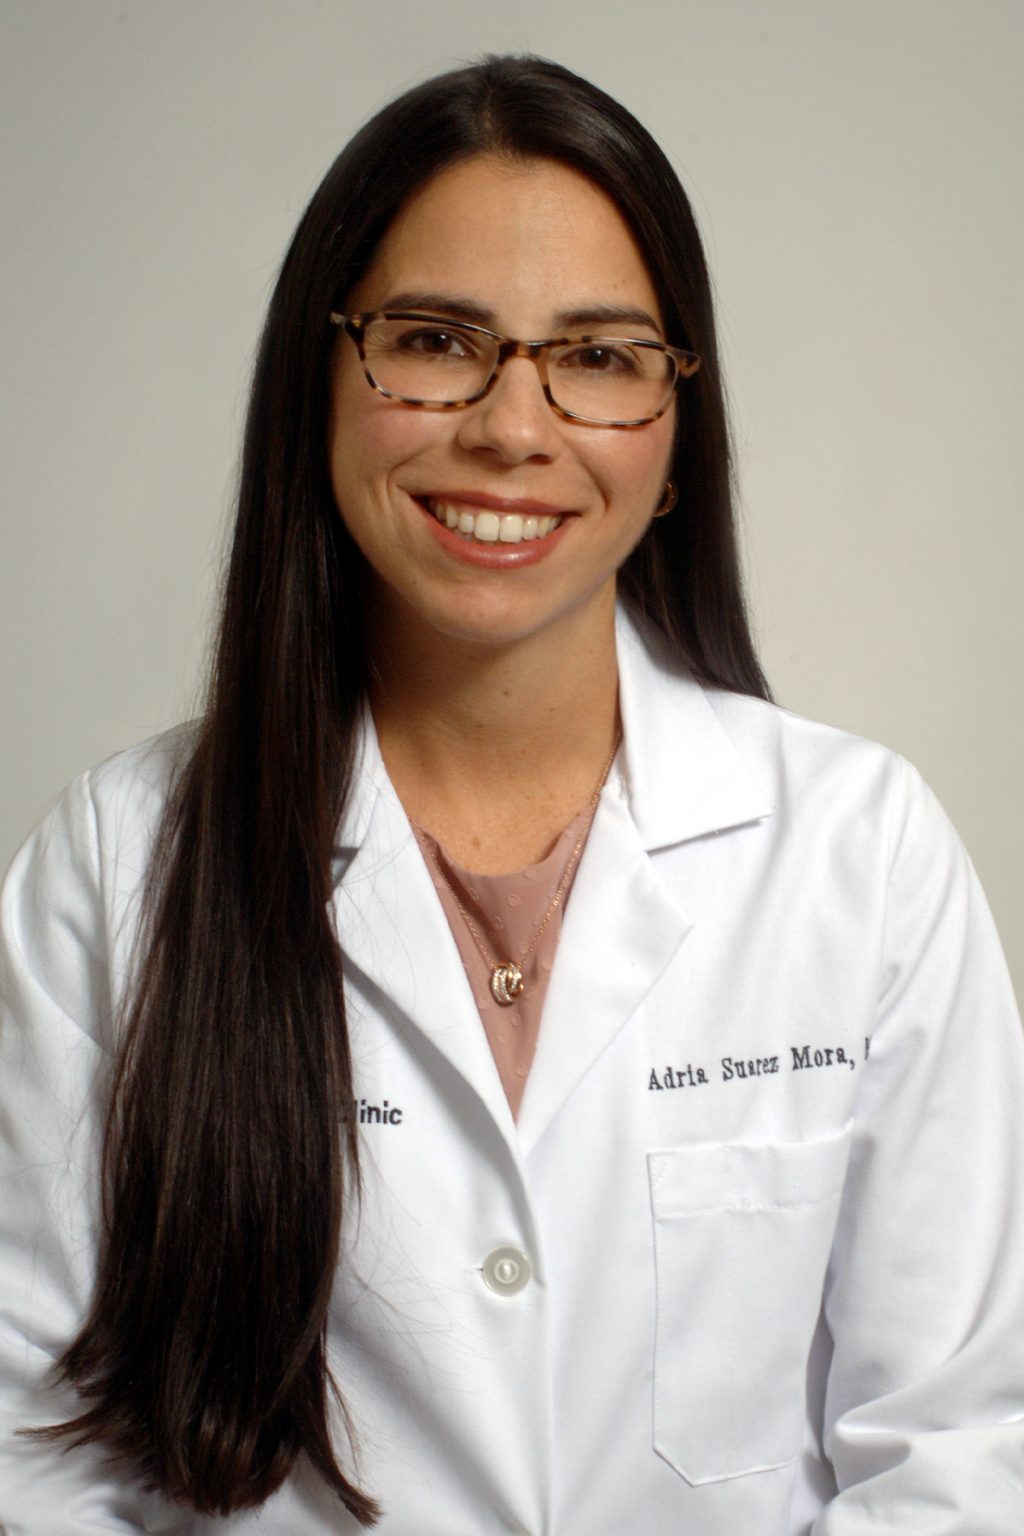 Dr. Adria Suarez Mora